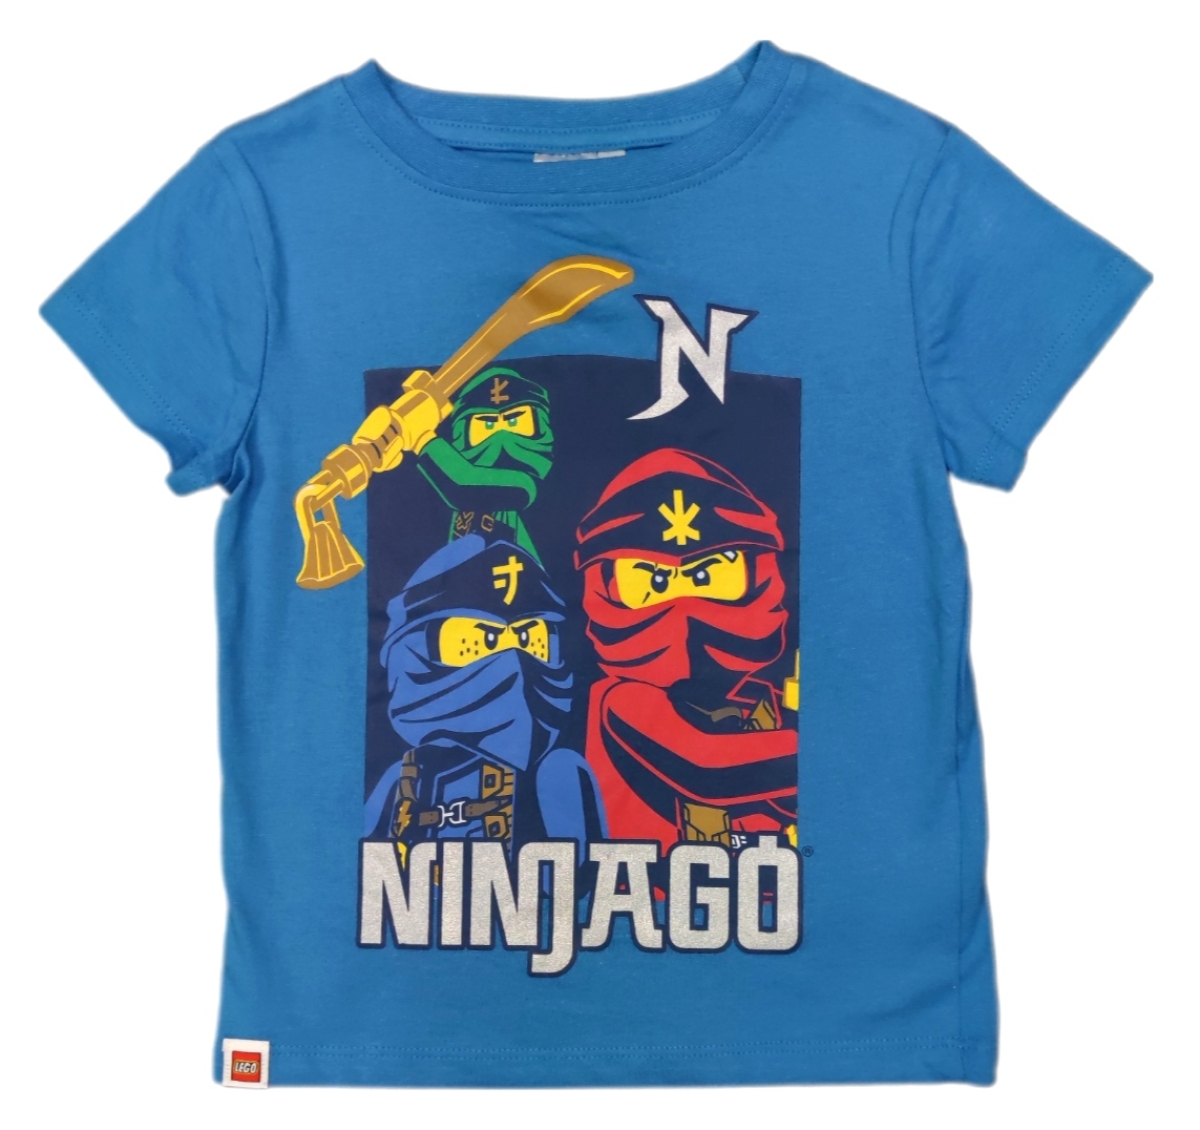 Lego Ninjago T-Shirt in Blau mit 3 der Ninjas und dem Schriftzug "Ninjago" auf der Vorderseite des Shirts